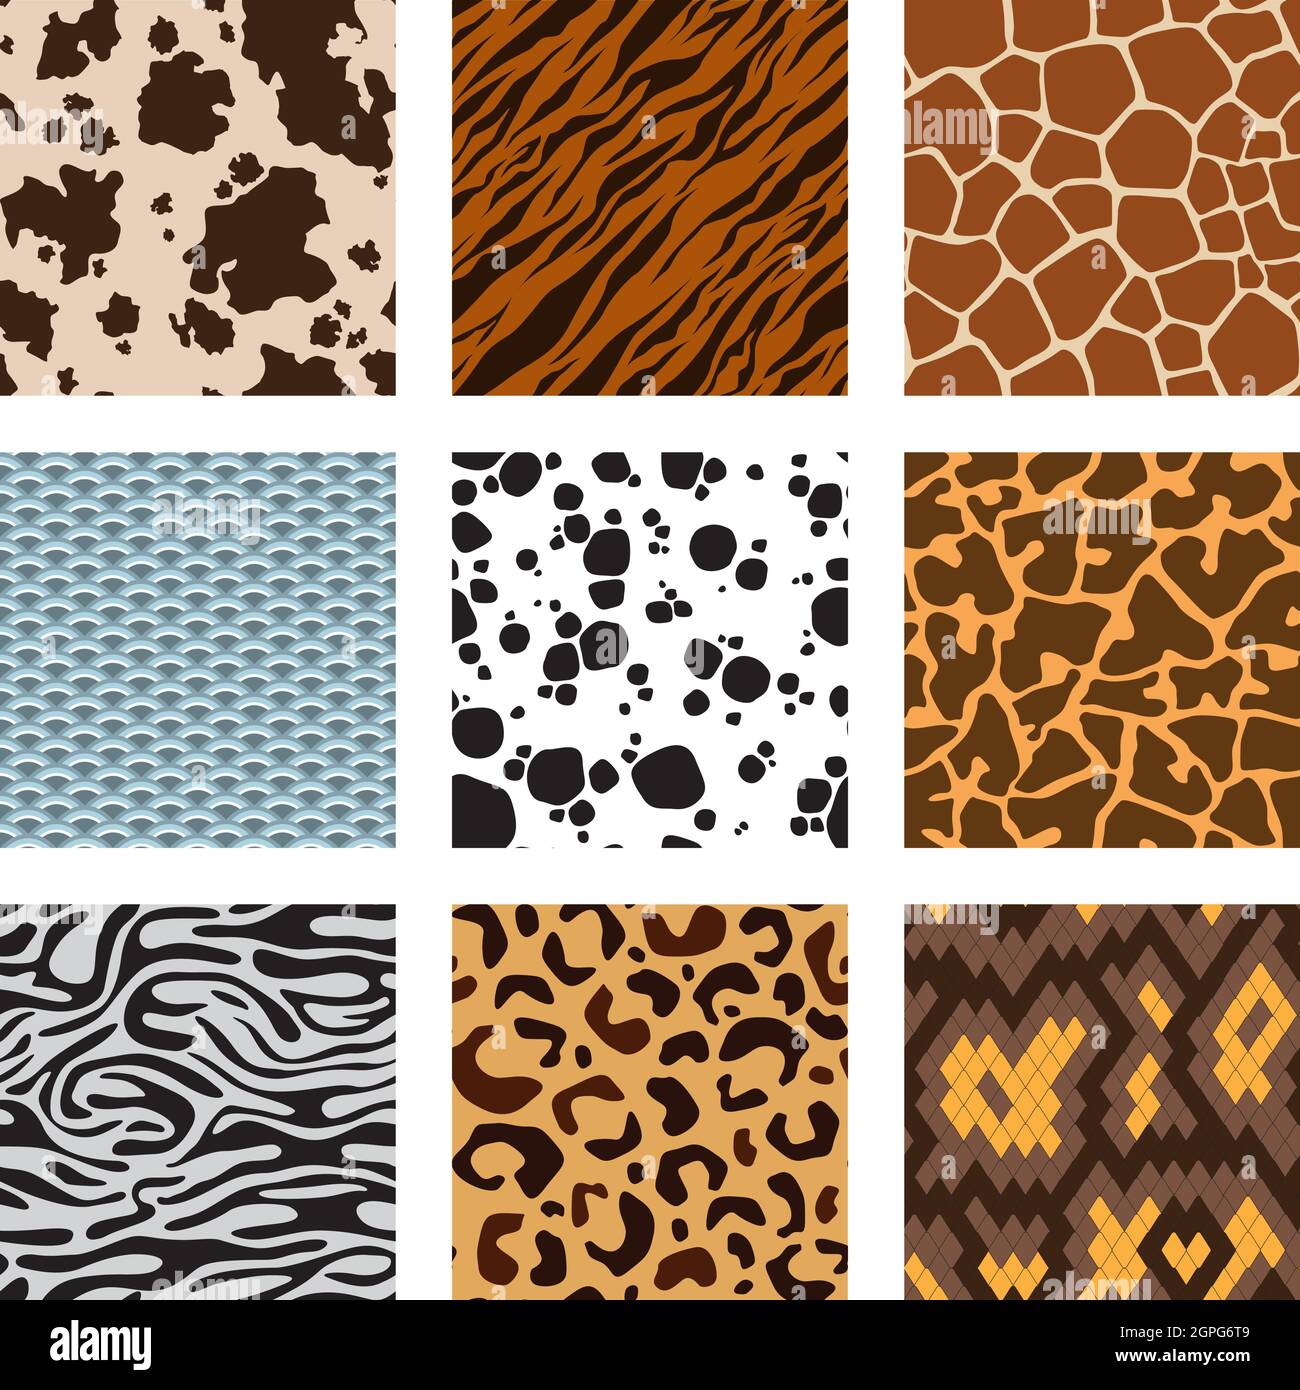 Tiere Hautmuster. Zoo nahtlose Hintergründe Sammlung von Zebra Tiger Giraffe Schlange Skins Vektor-Set Stock Vektor